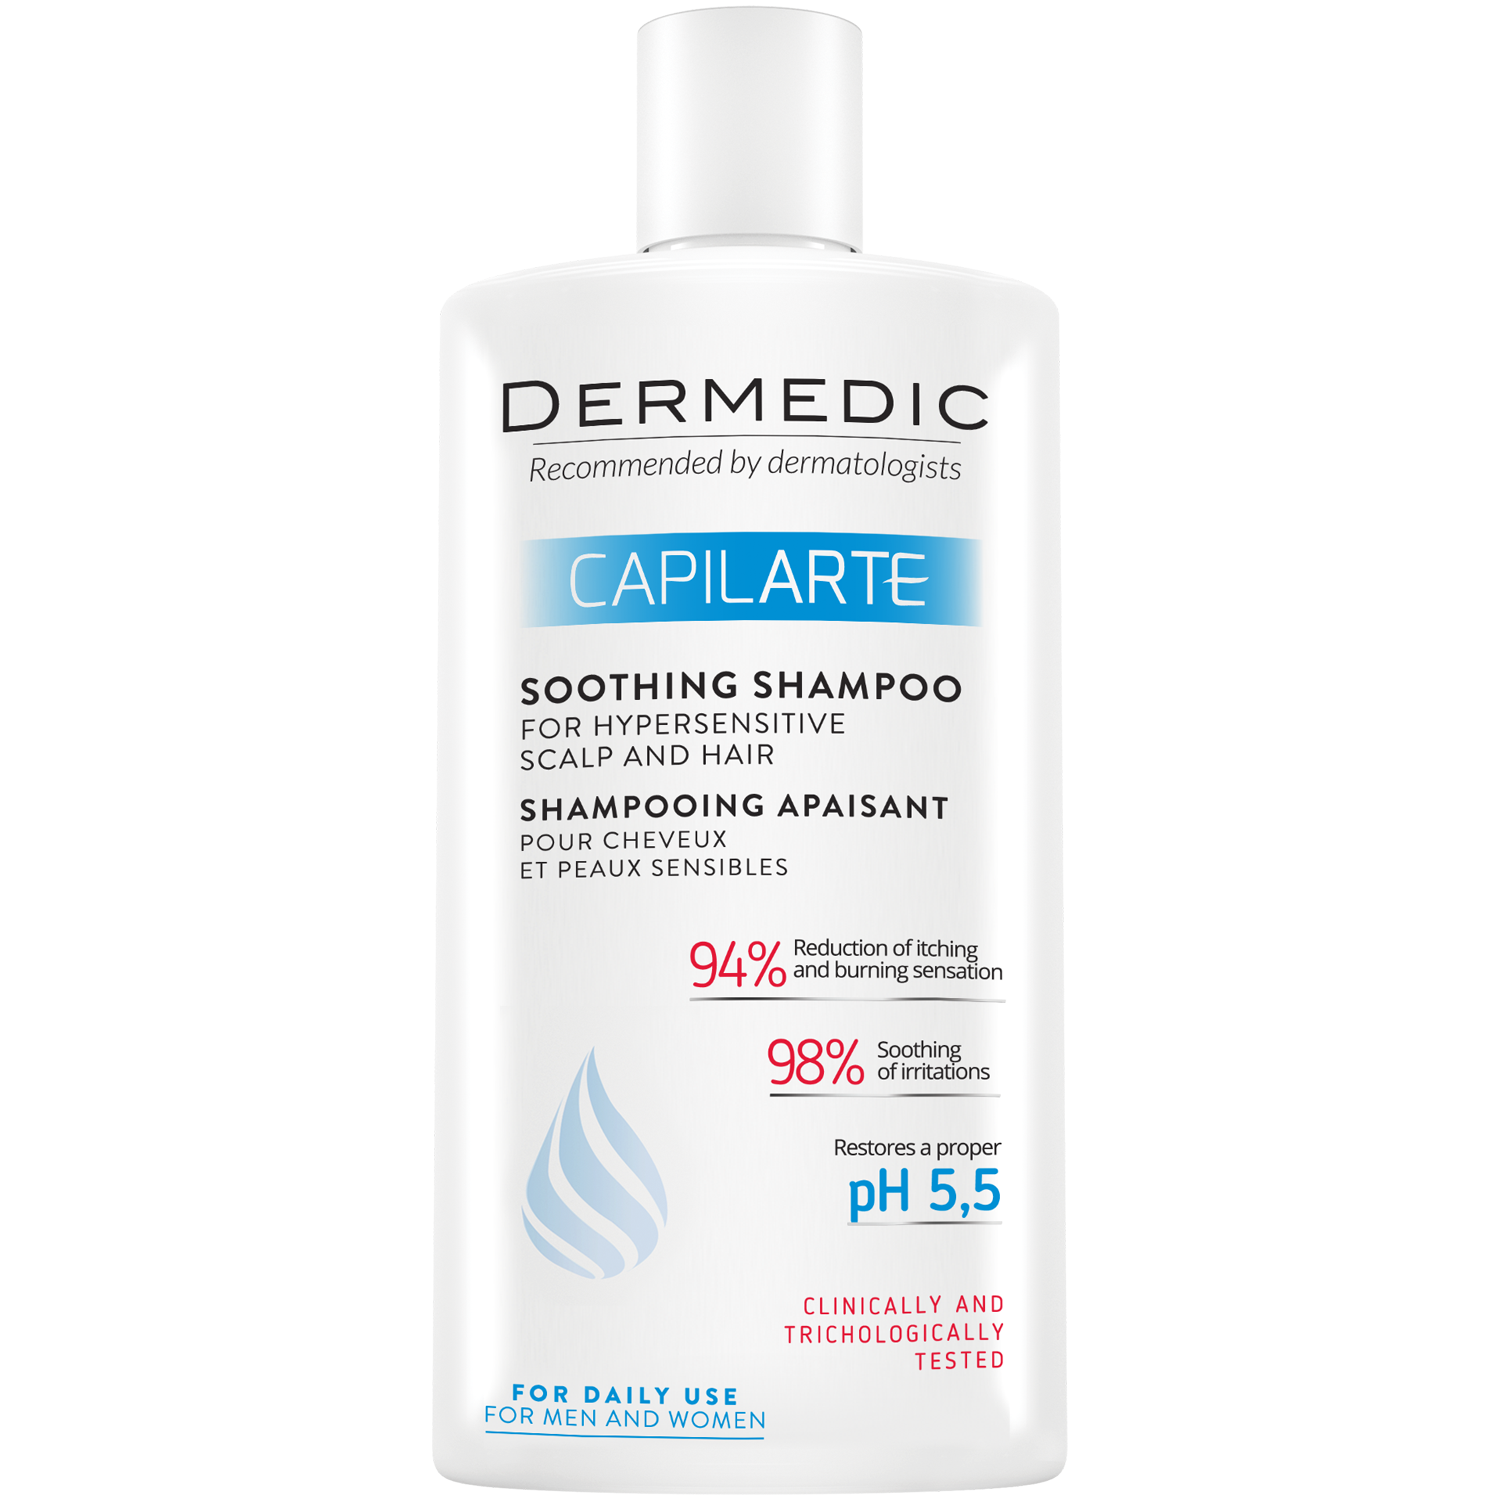 Dermedic Capilarte успокаивающий шампунь для гиперчувствительной кожи, 300 мл дермедик капиларте успокаивающий шампунь для волос и чувствительной кожи головы 300 мл dermedic capilarte soothing shampoo for sensitive and irritated scalp dermedic 300 мл